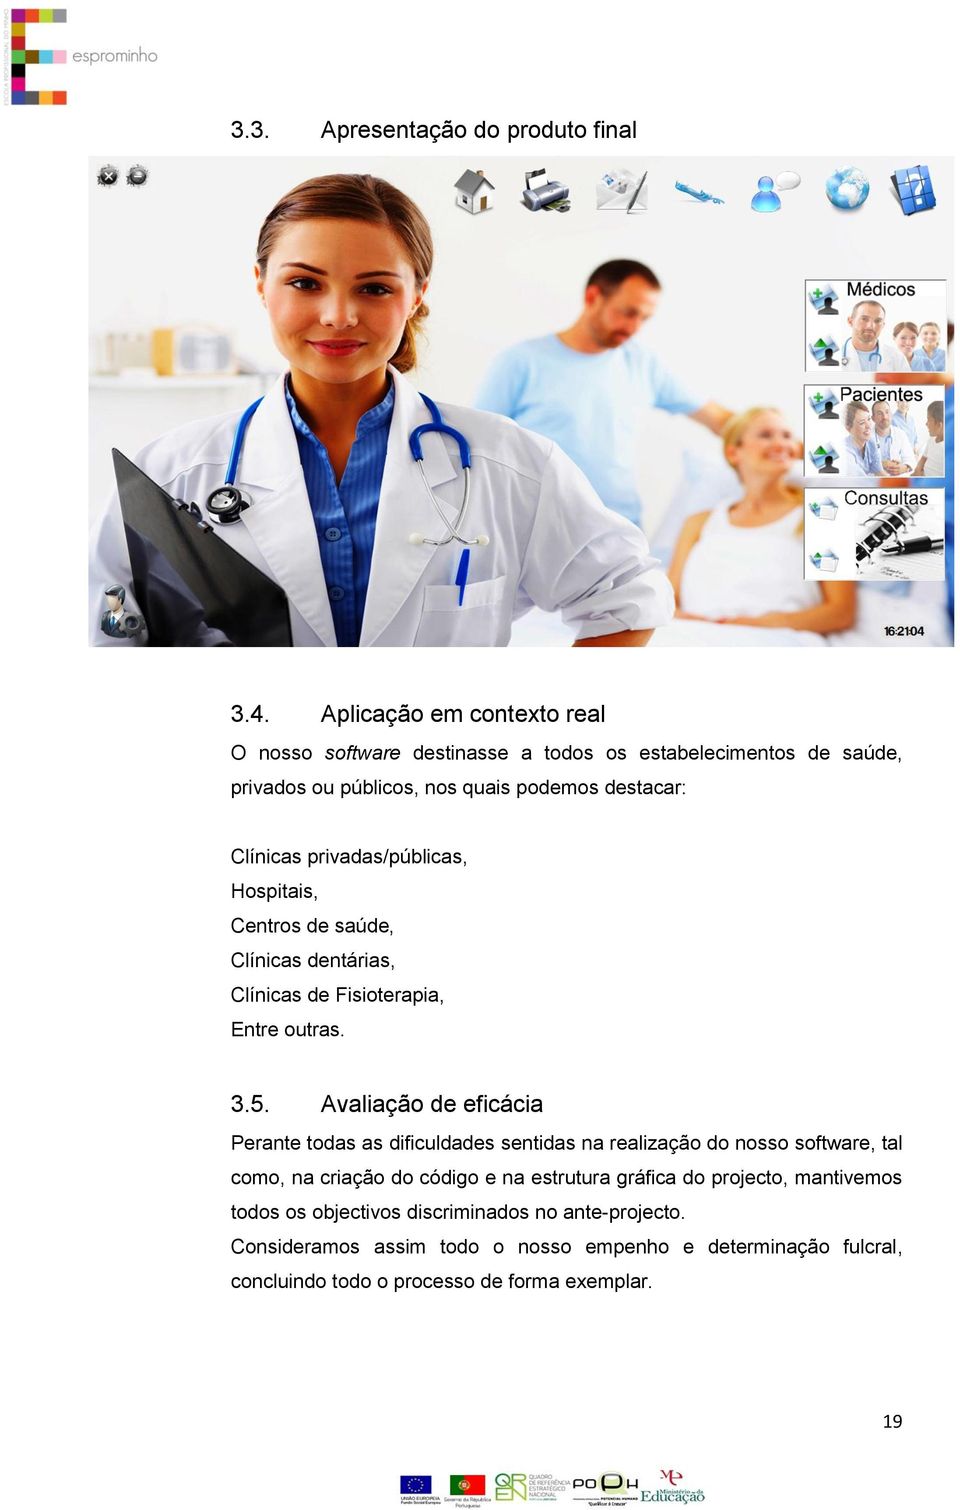 privadas/públicas, Hospitais, Centros de saúde, Clínicas dentárias, Clínicas de Fisioterapia, Entre outras. 3.5.